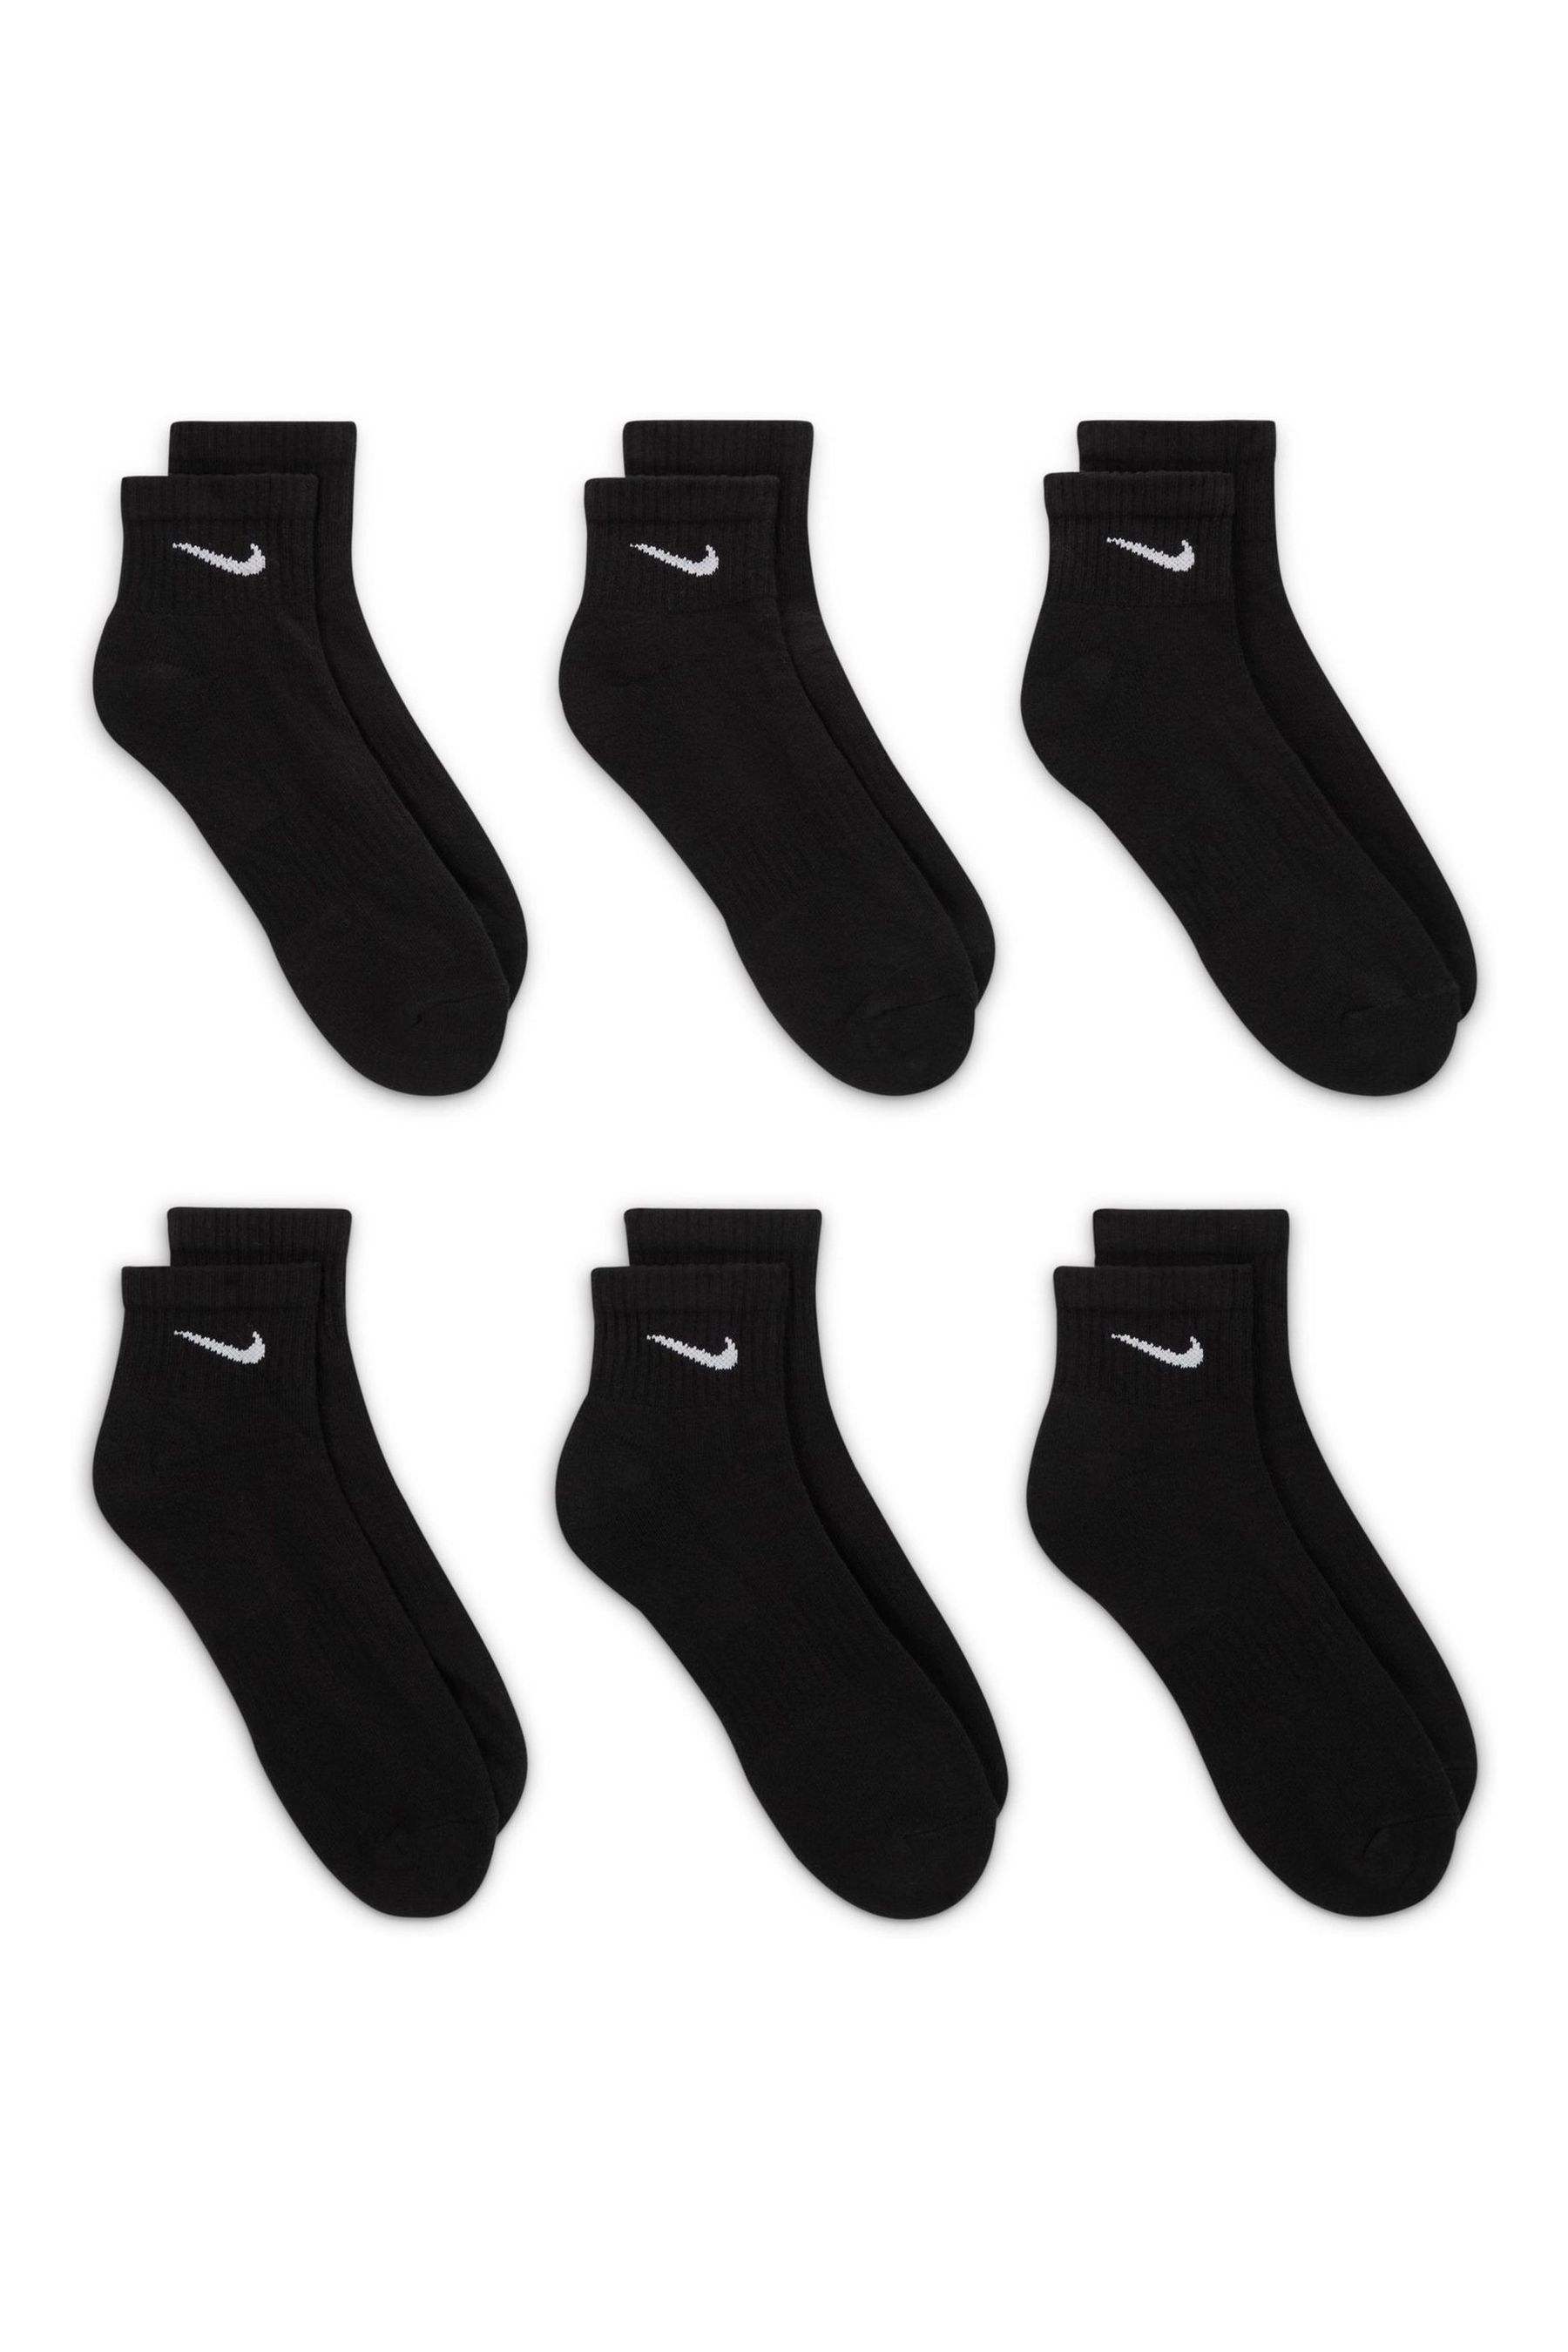 Buy Nike Black/White Everyday Cushioned Training Ankle Socks 6 Pack ...